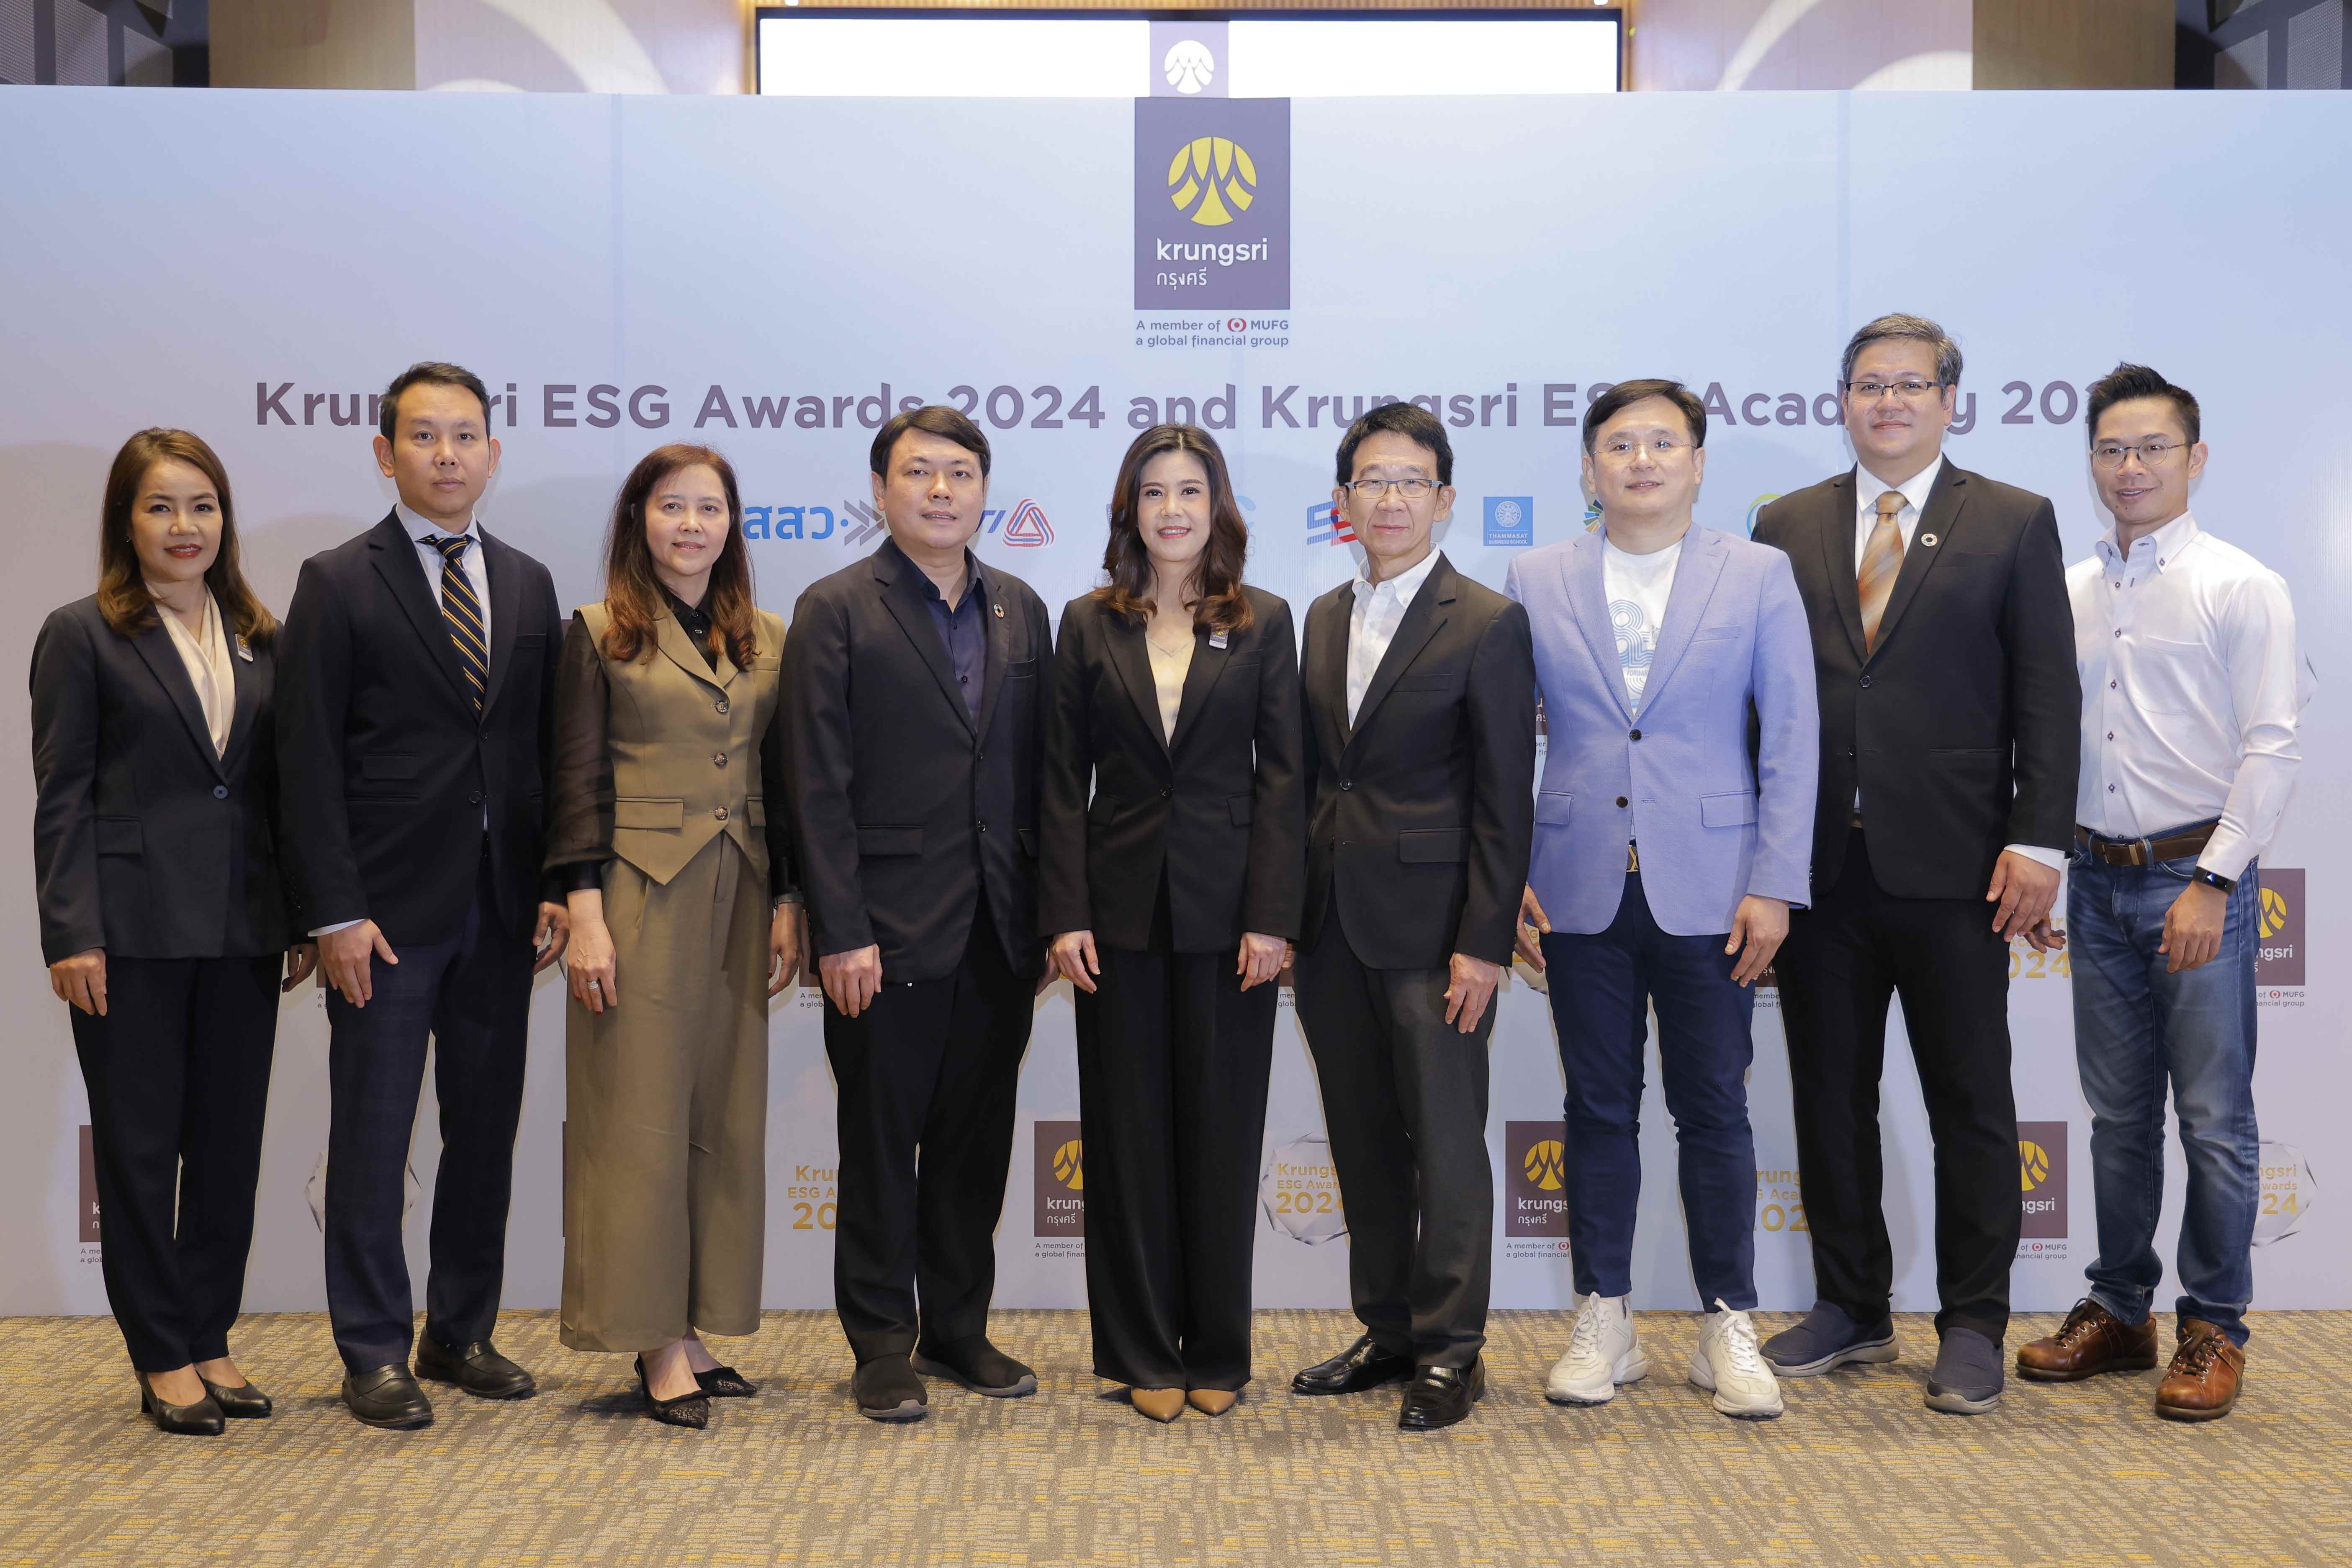 กรุงศรี เปิดโครงการ Krungsri ESG Awards ต่อเนื่องปีที่ 2 และ Krungsri ESG Academy หนุน SME ไทย สร้างแผนเปลี่ยนผ่านธุรกิจสู่ความยั่งยืนที่ทำได้จริง สำนักพิมพ์แม่บ้าน